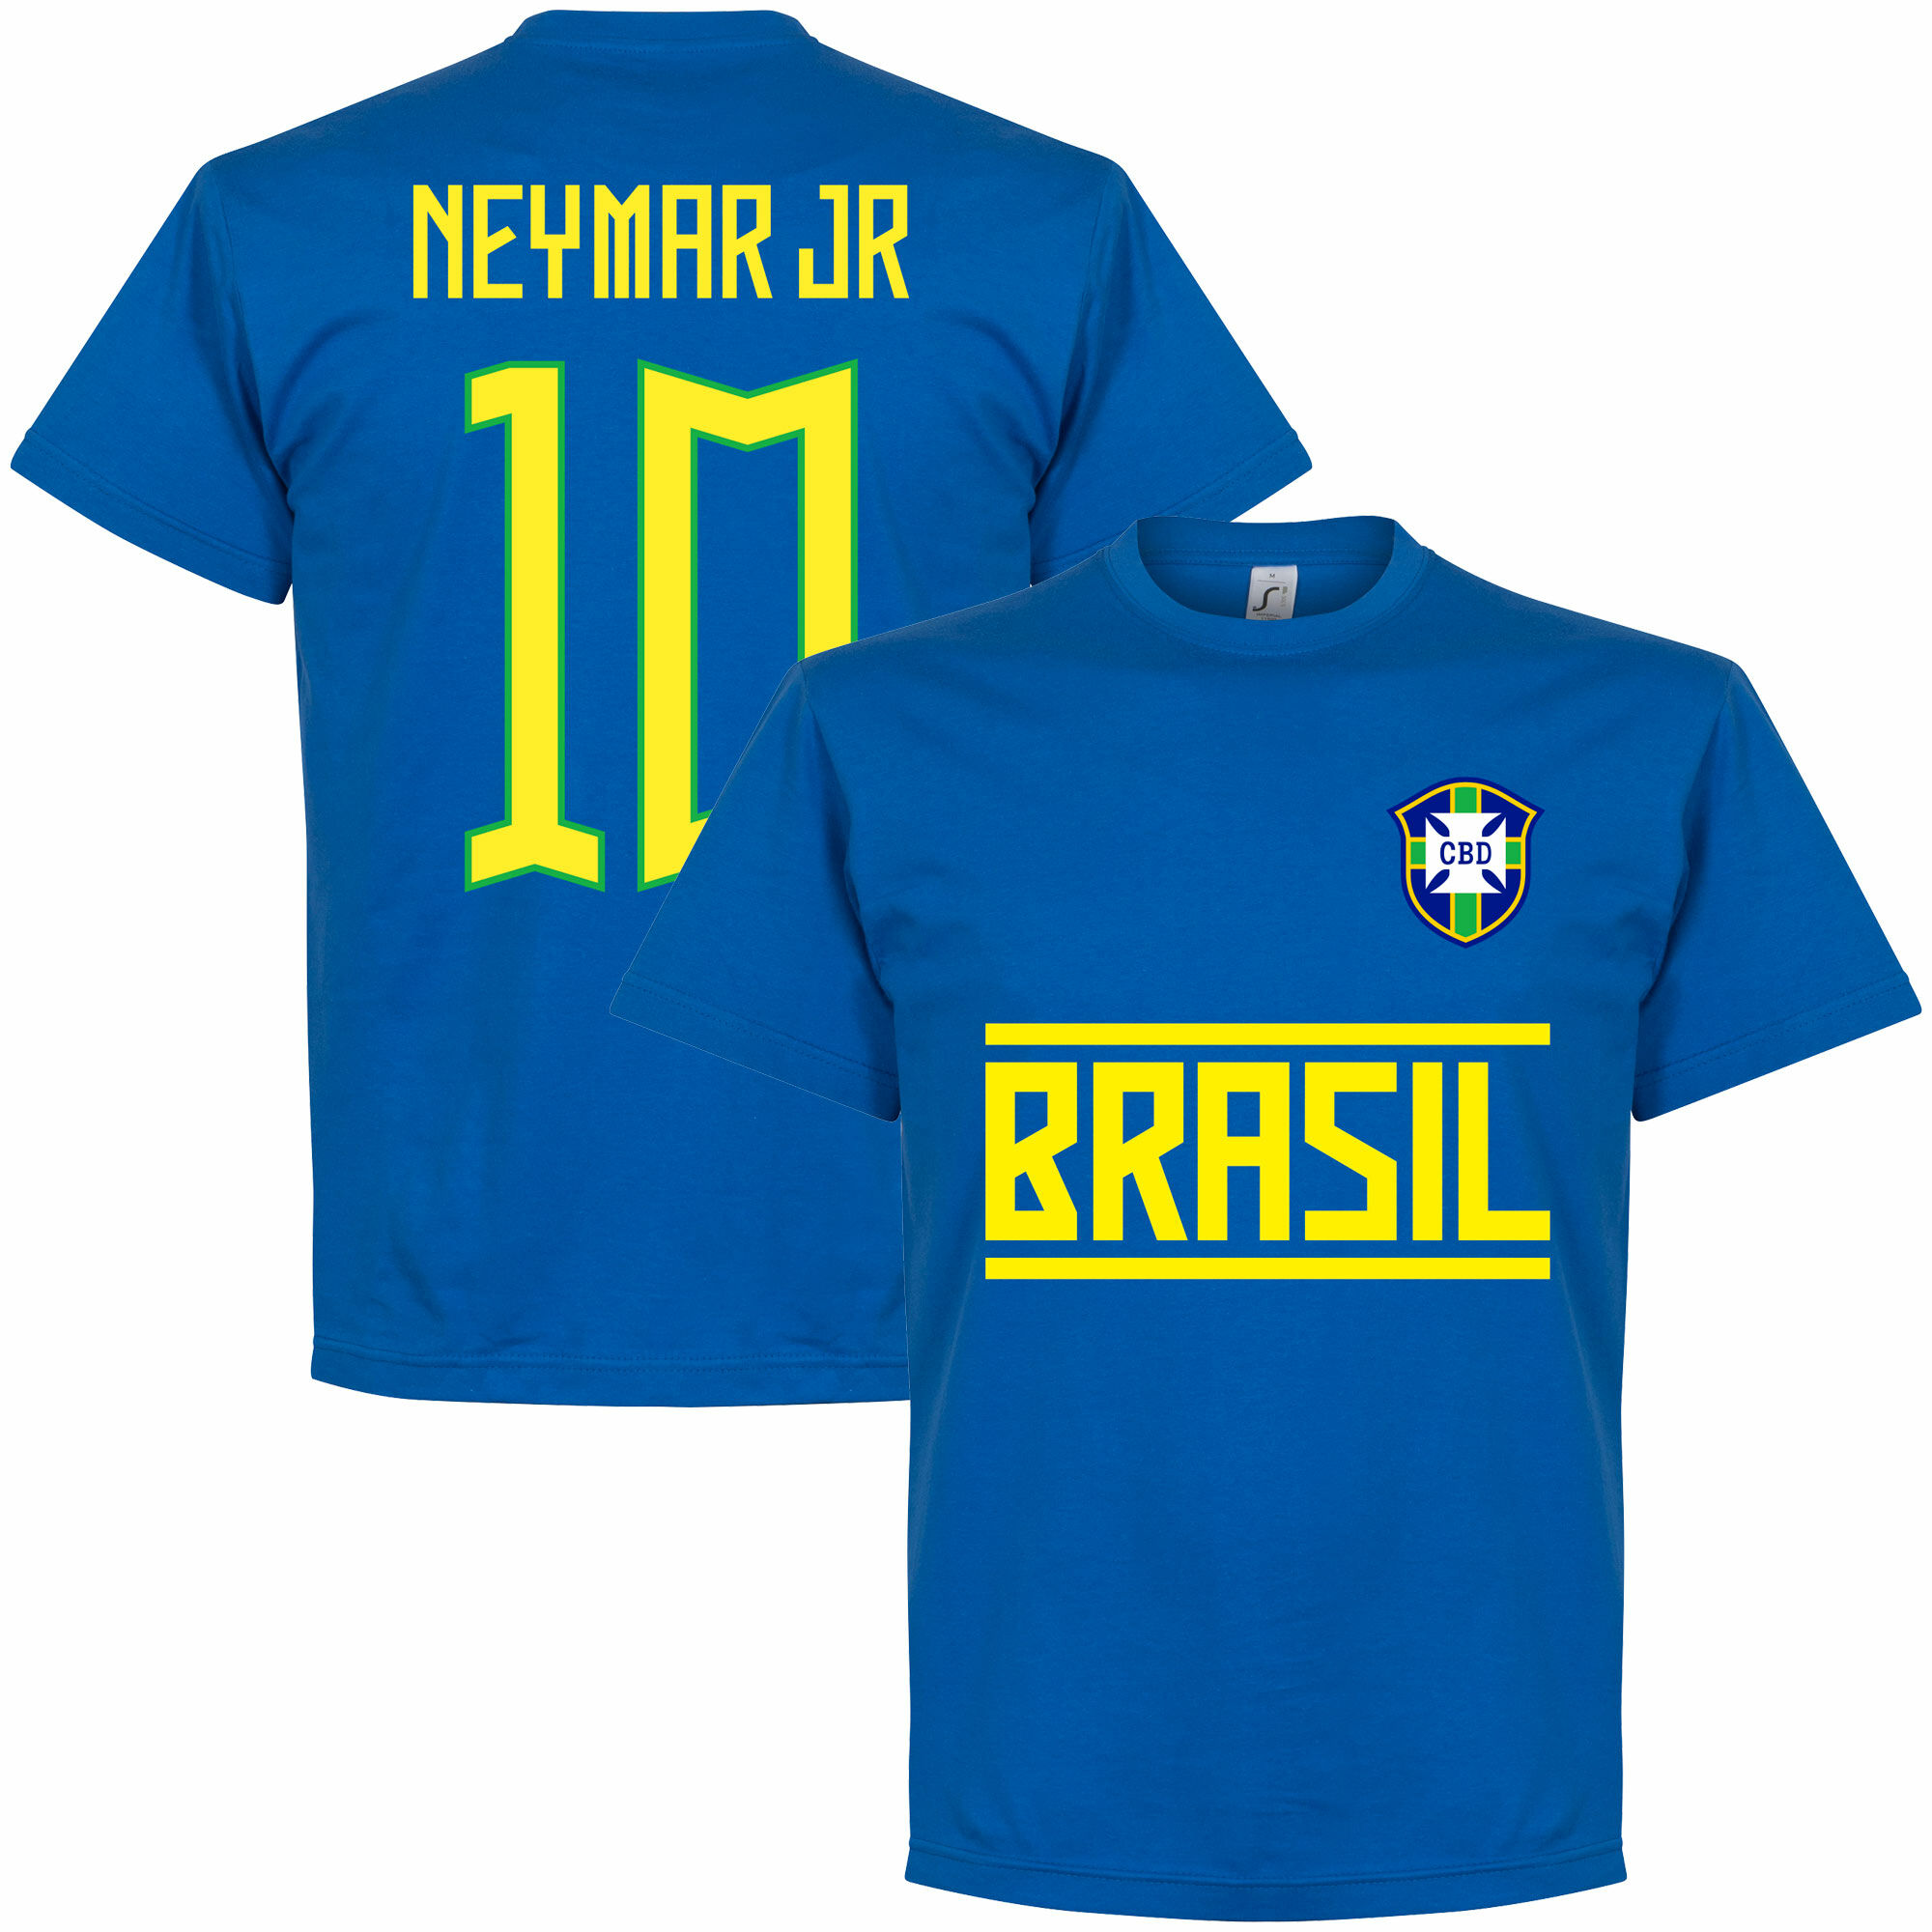 Brazílie - Tričko - číslo 10, modré, Neymar